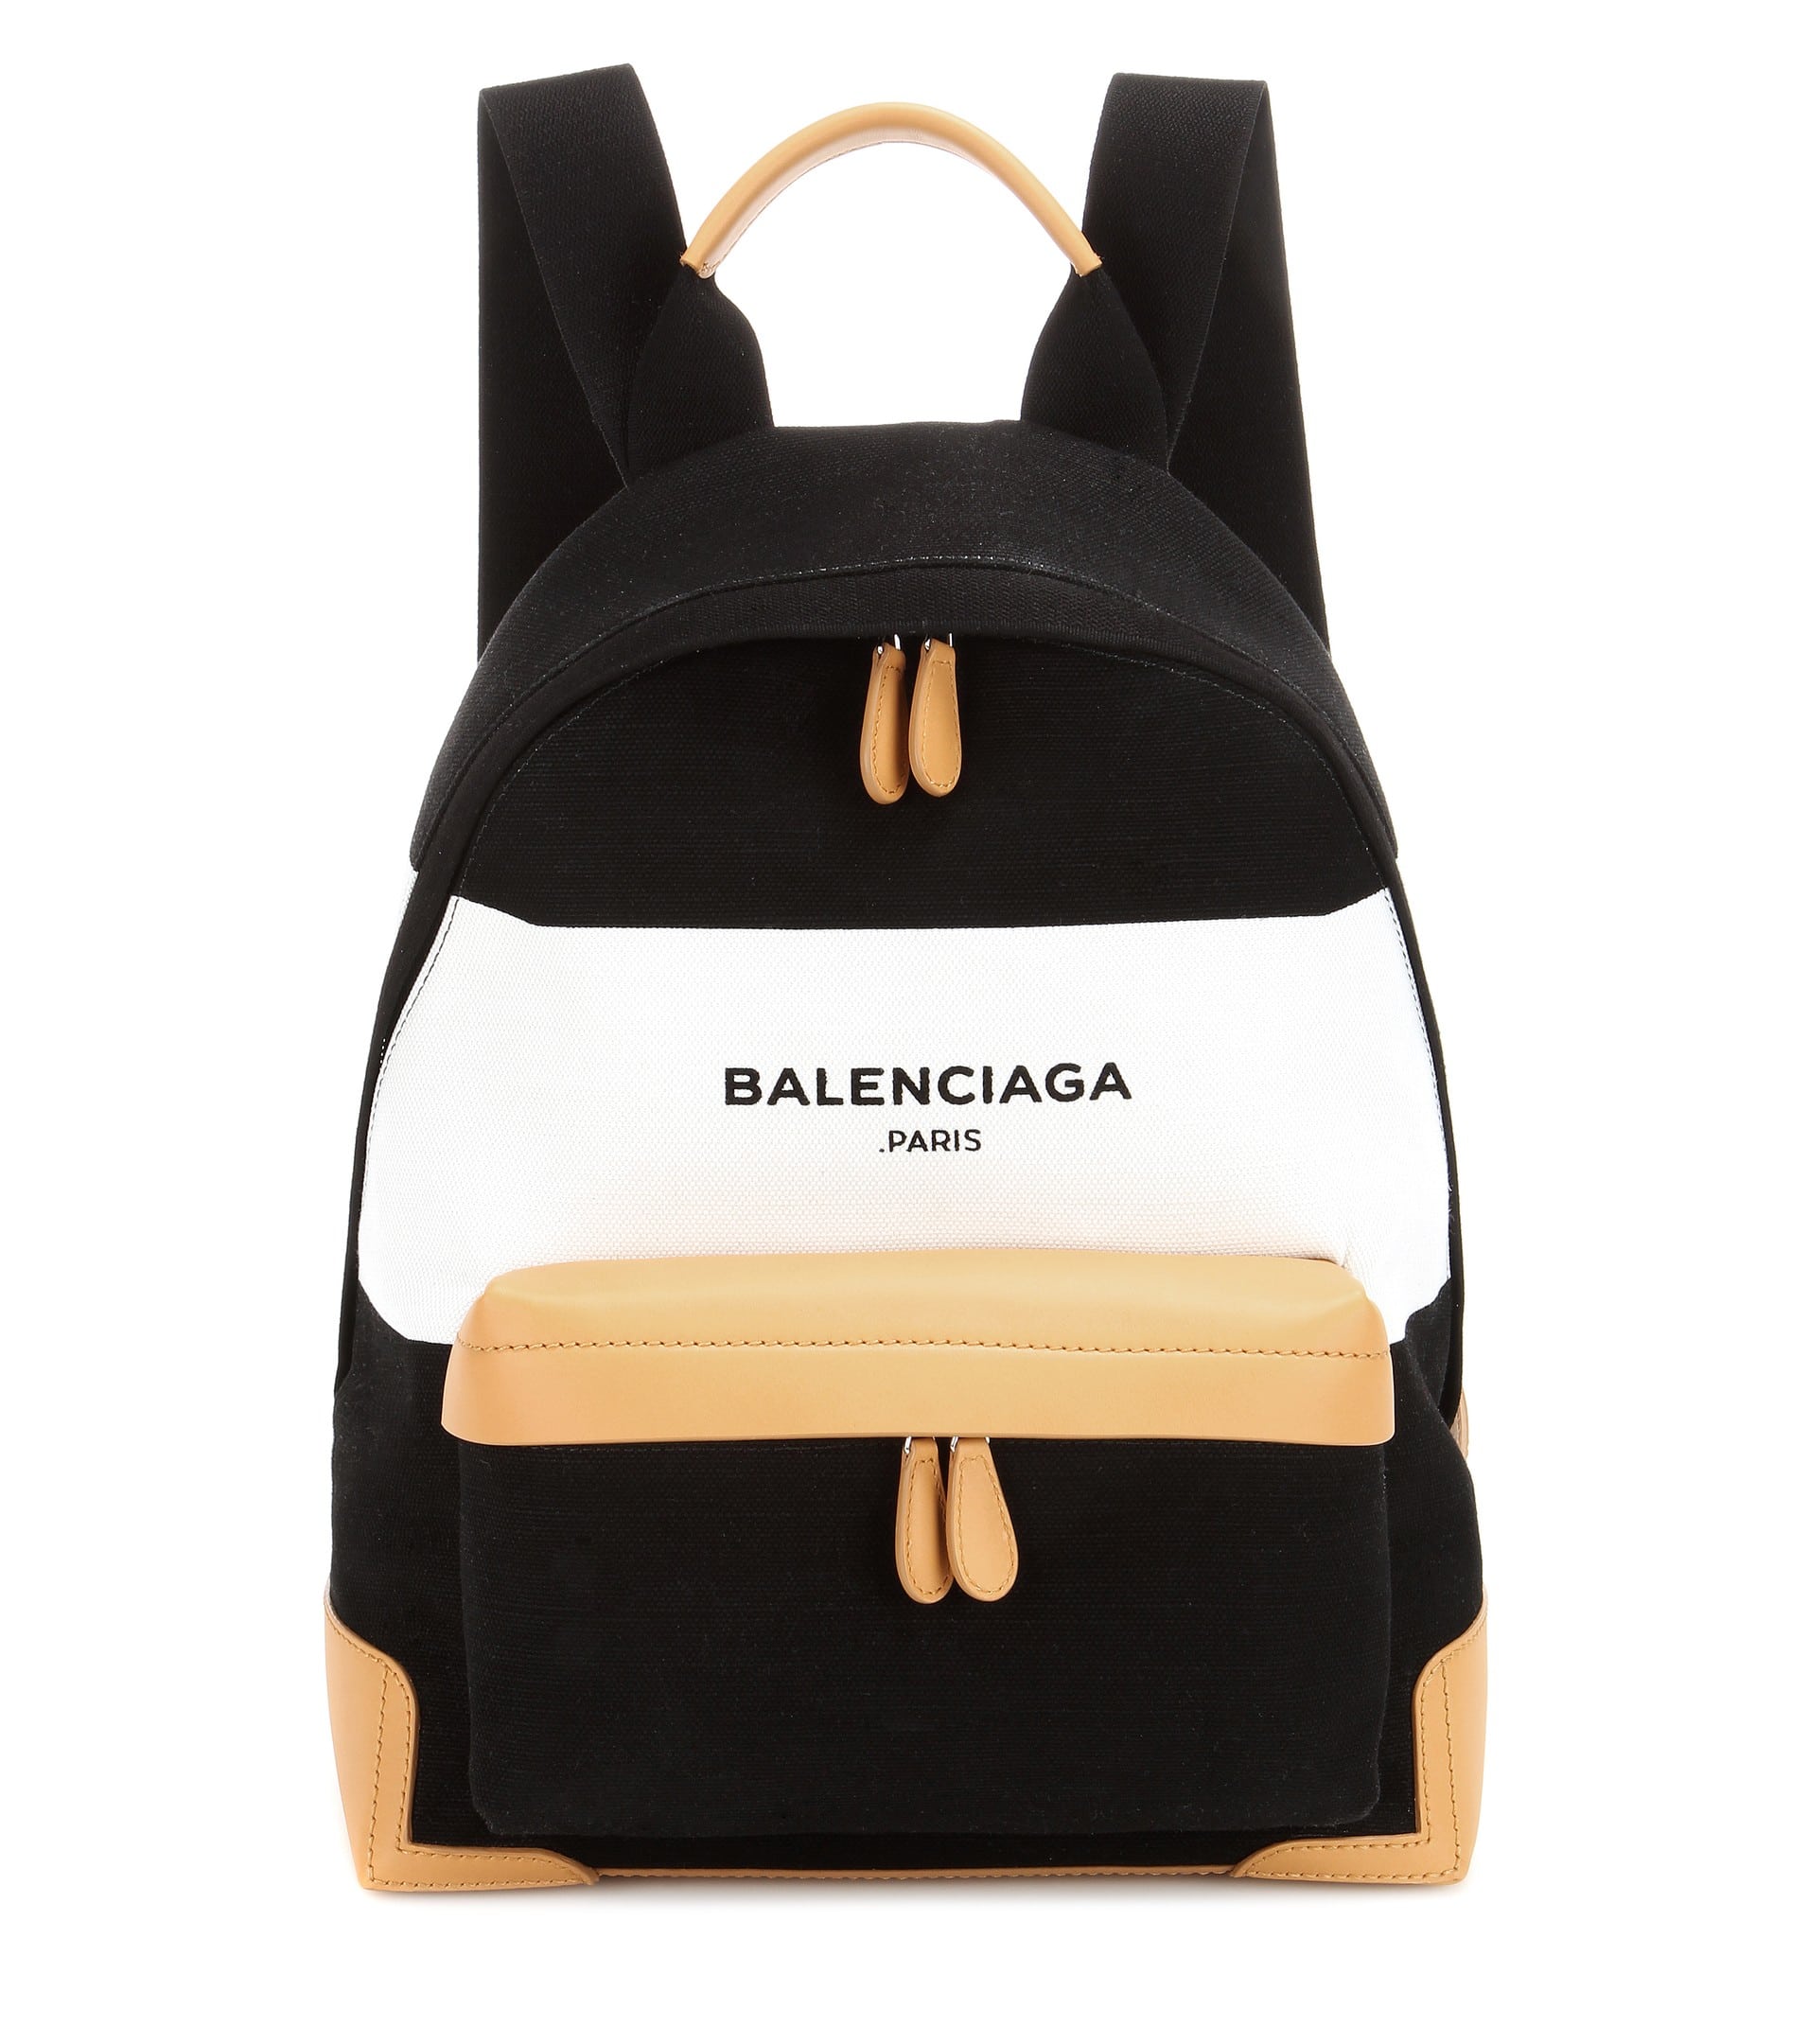 Balenciaga Spring/Summer 2016 Bag Collection | Spotted Fashion